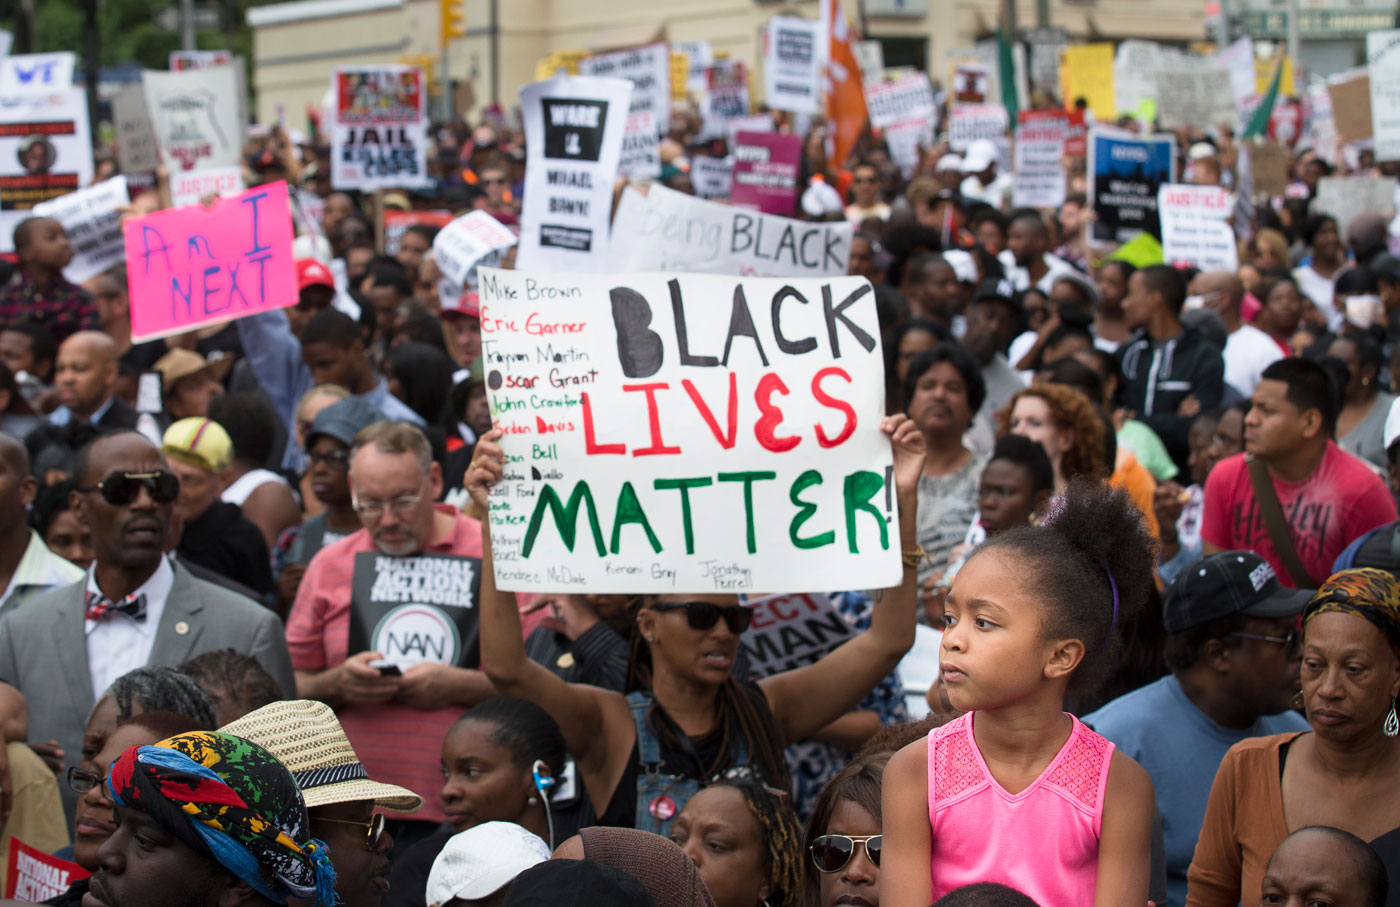 A Concrete Plan to Make Black Lives Matter